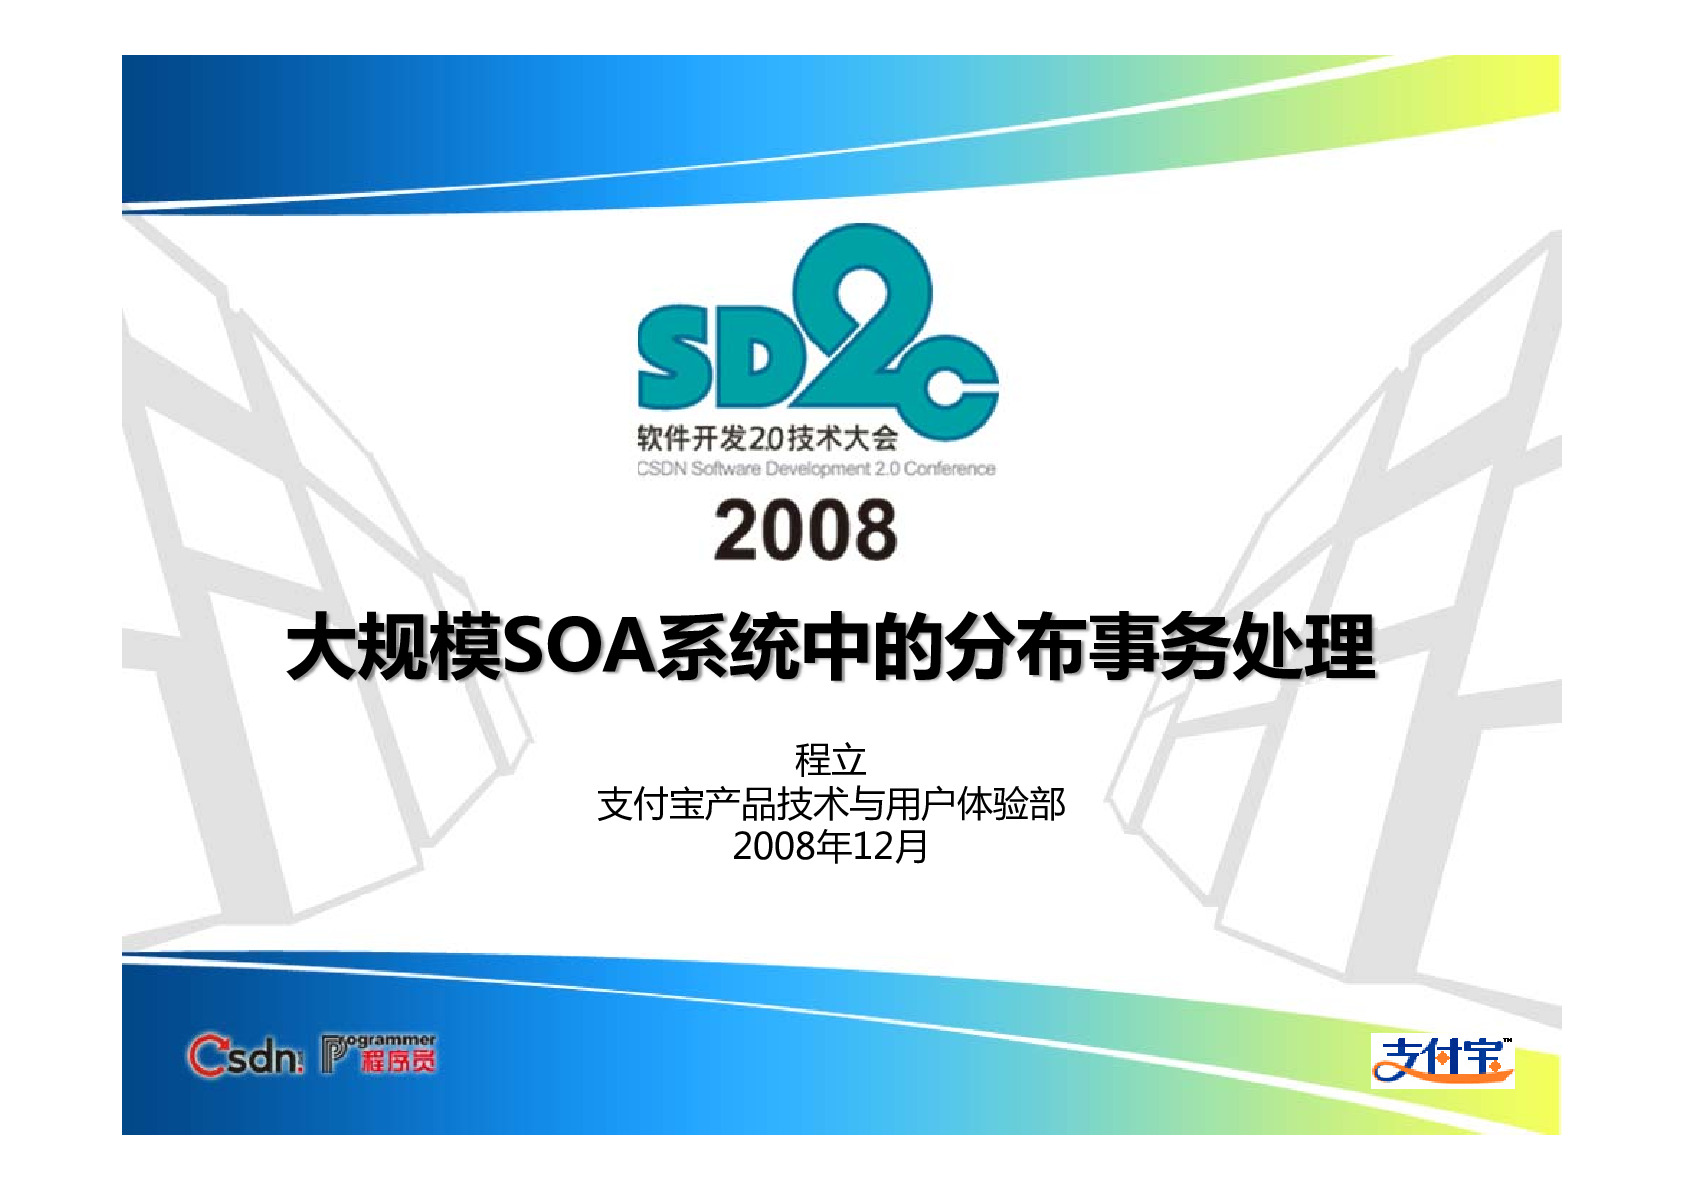 大规模SOA系统中的分布式事务处理_程立_SD2C2008